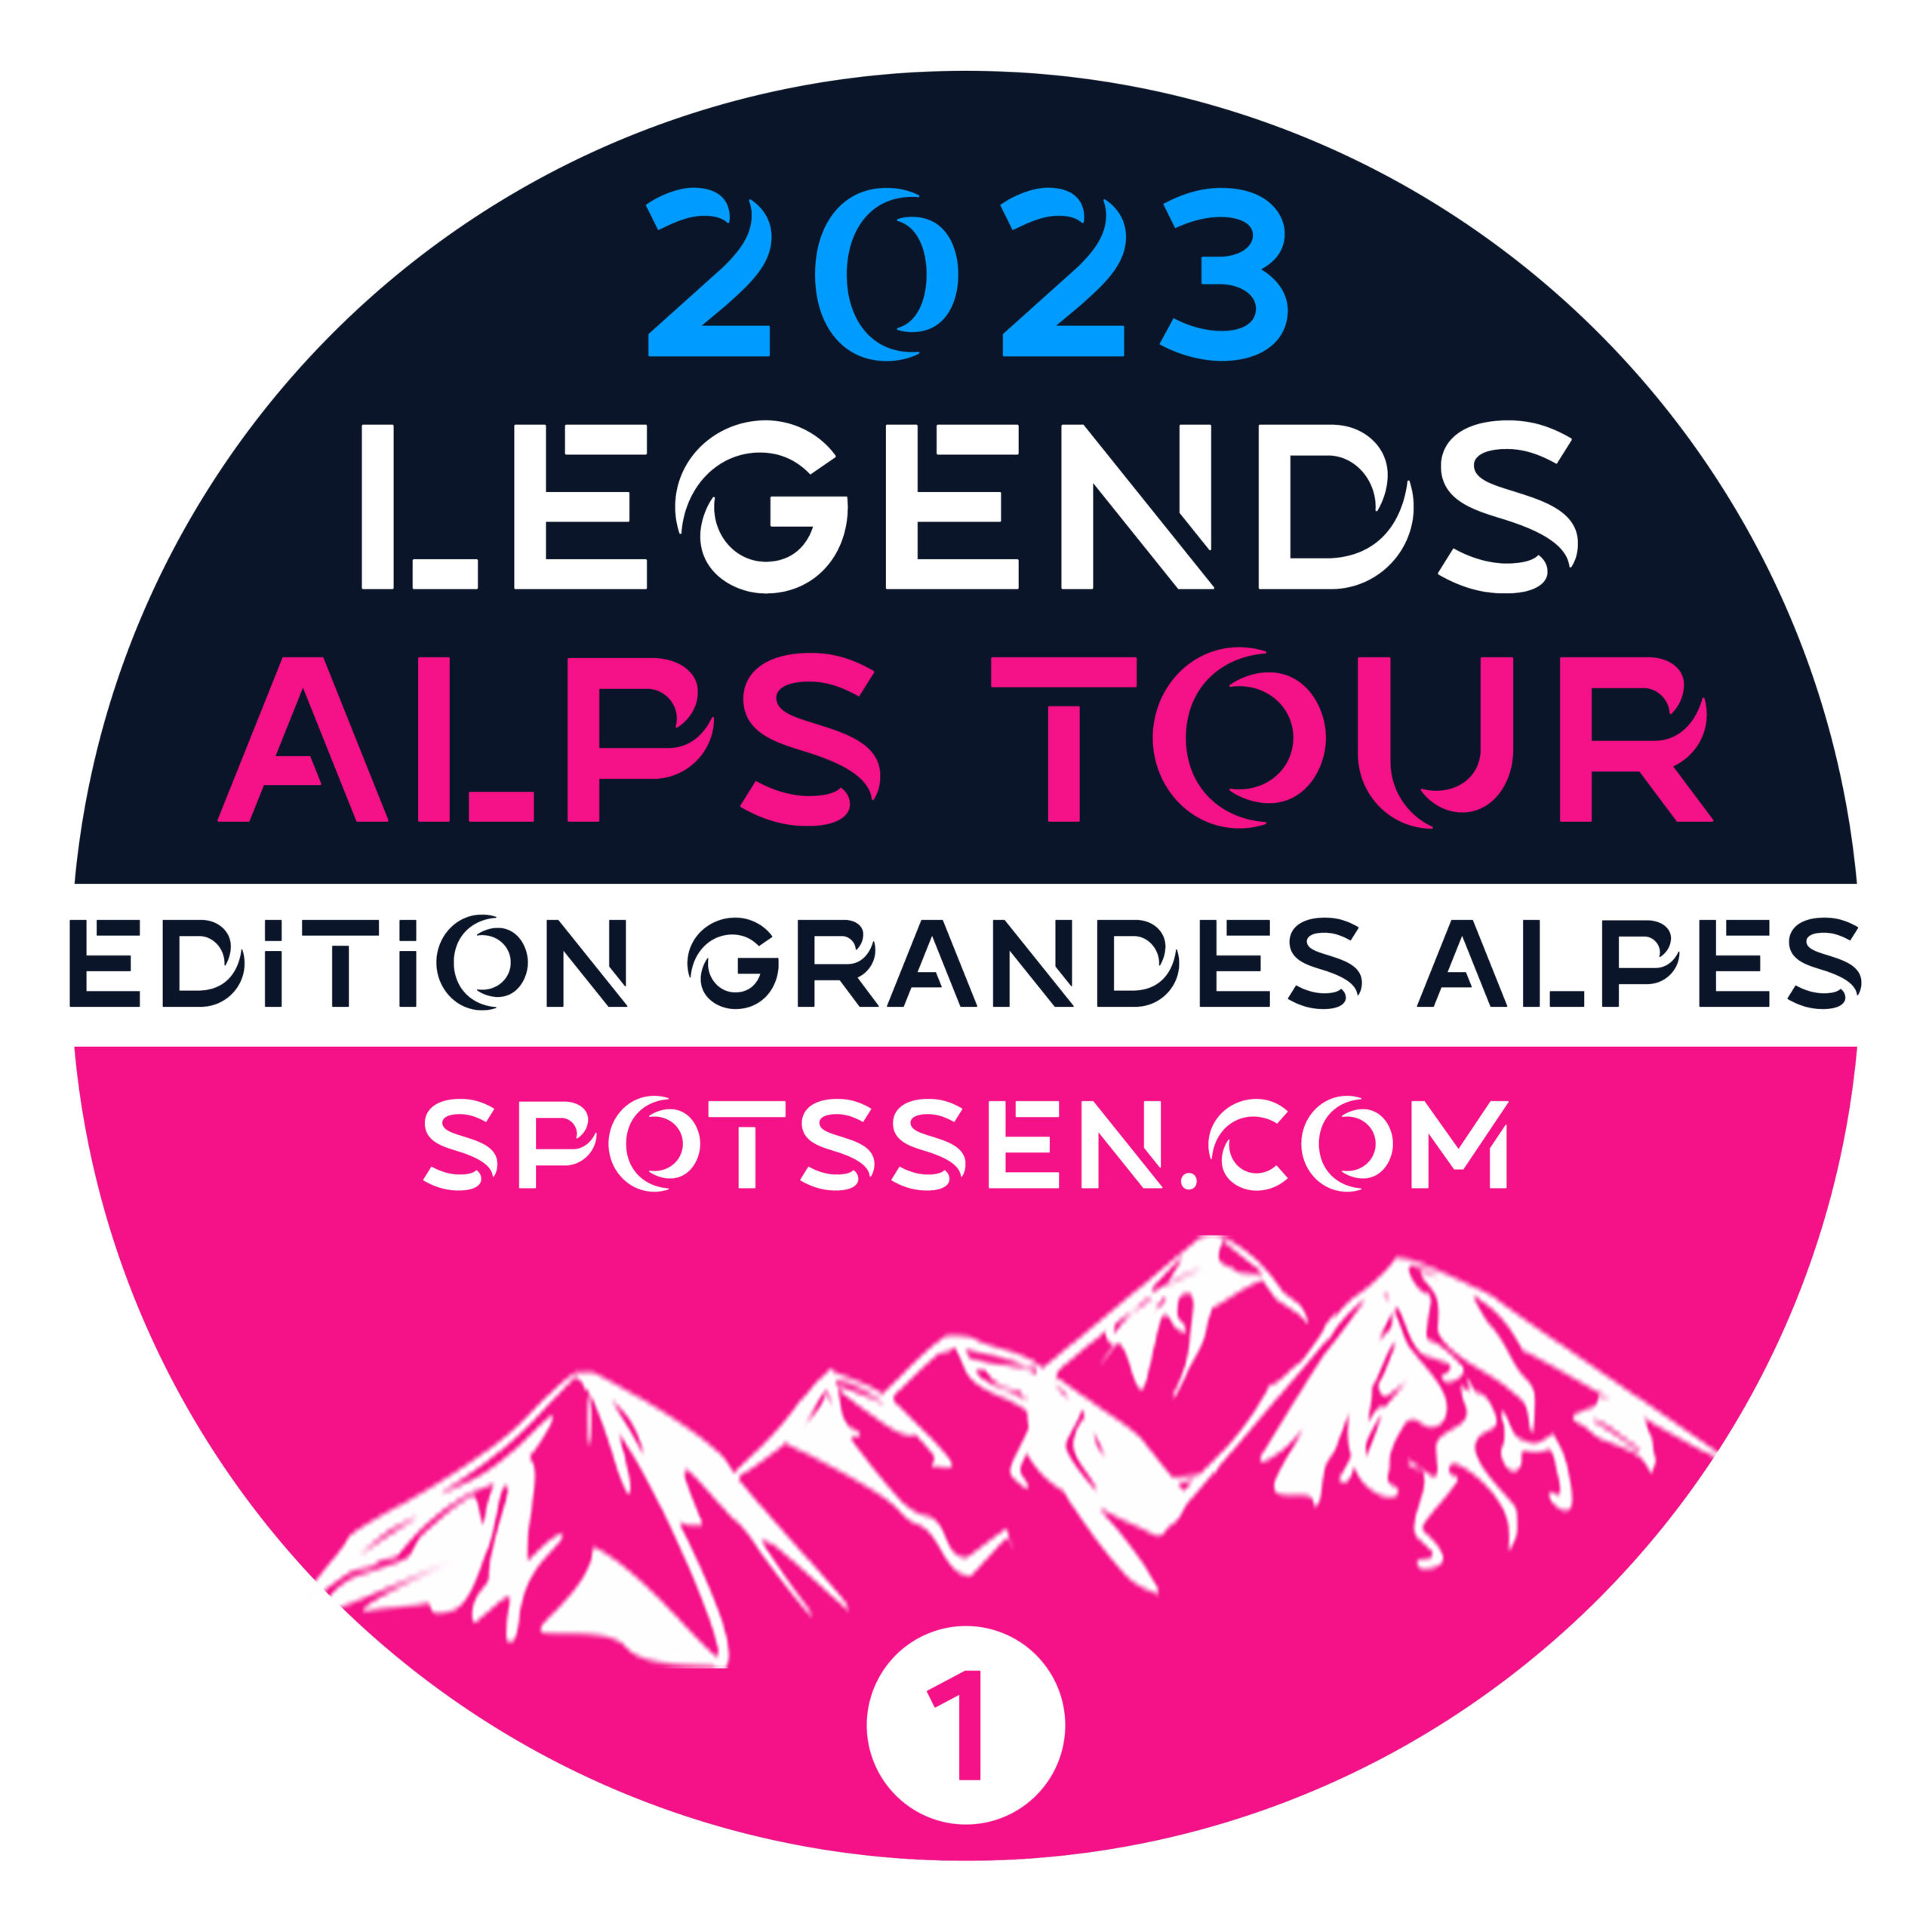 Legends Alps Tour 2023